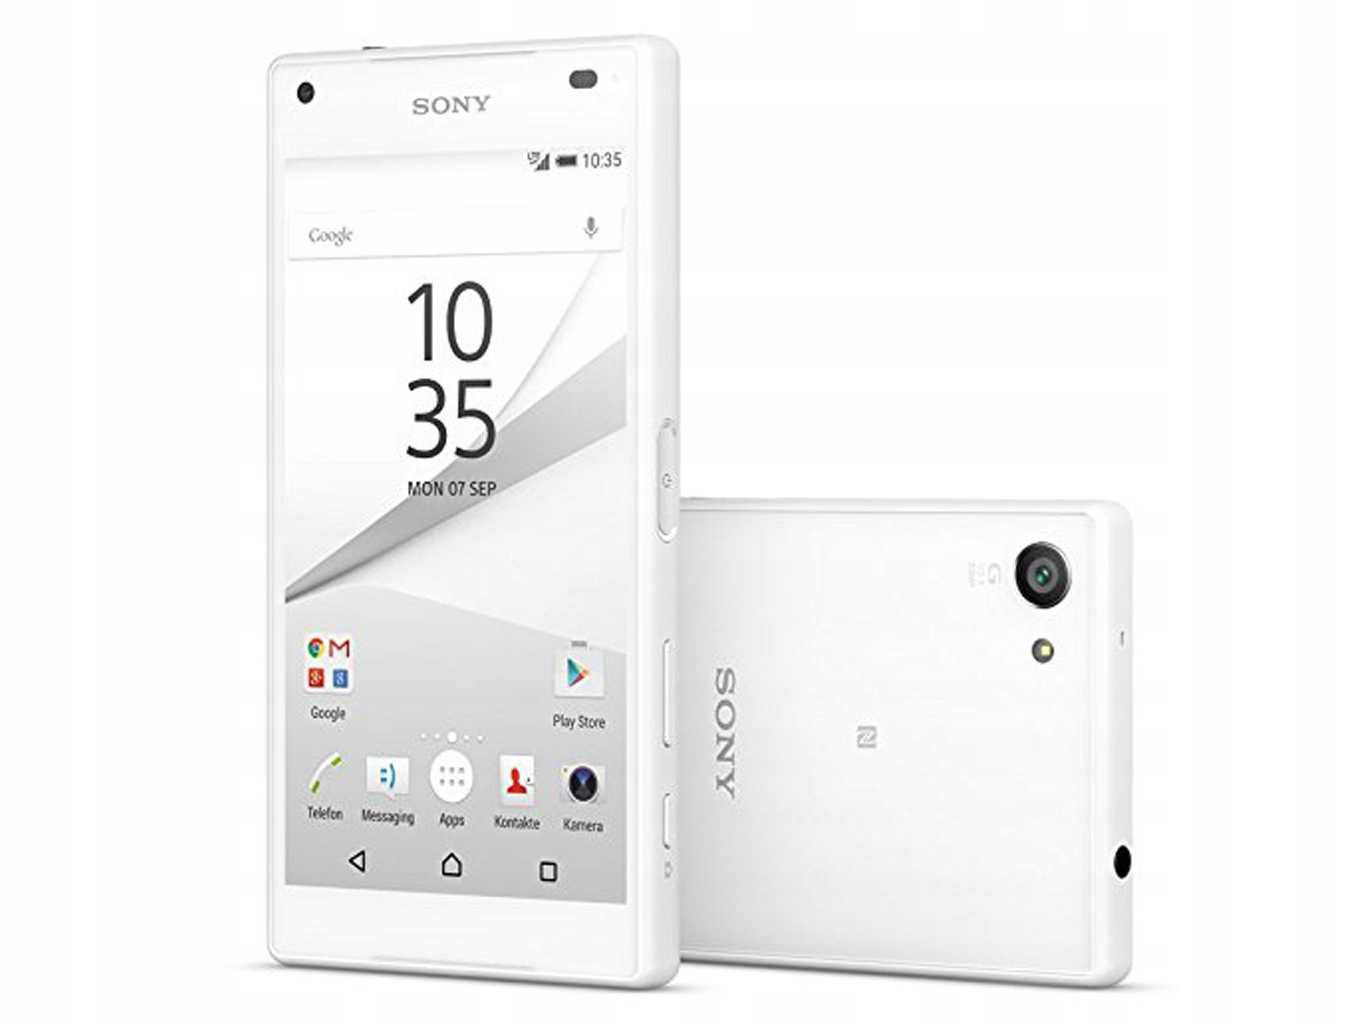 Мобильный телефон Sony Xperia Z5 - подробные характеристики обзоры видео фото Цены в интернет-магазинах где можно купить мобильный телефон Sony Xperia Z5